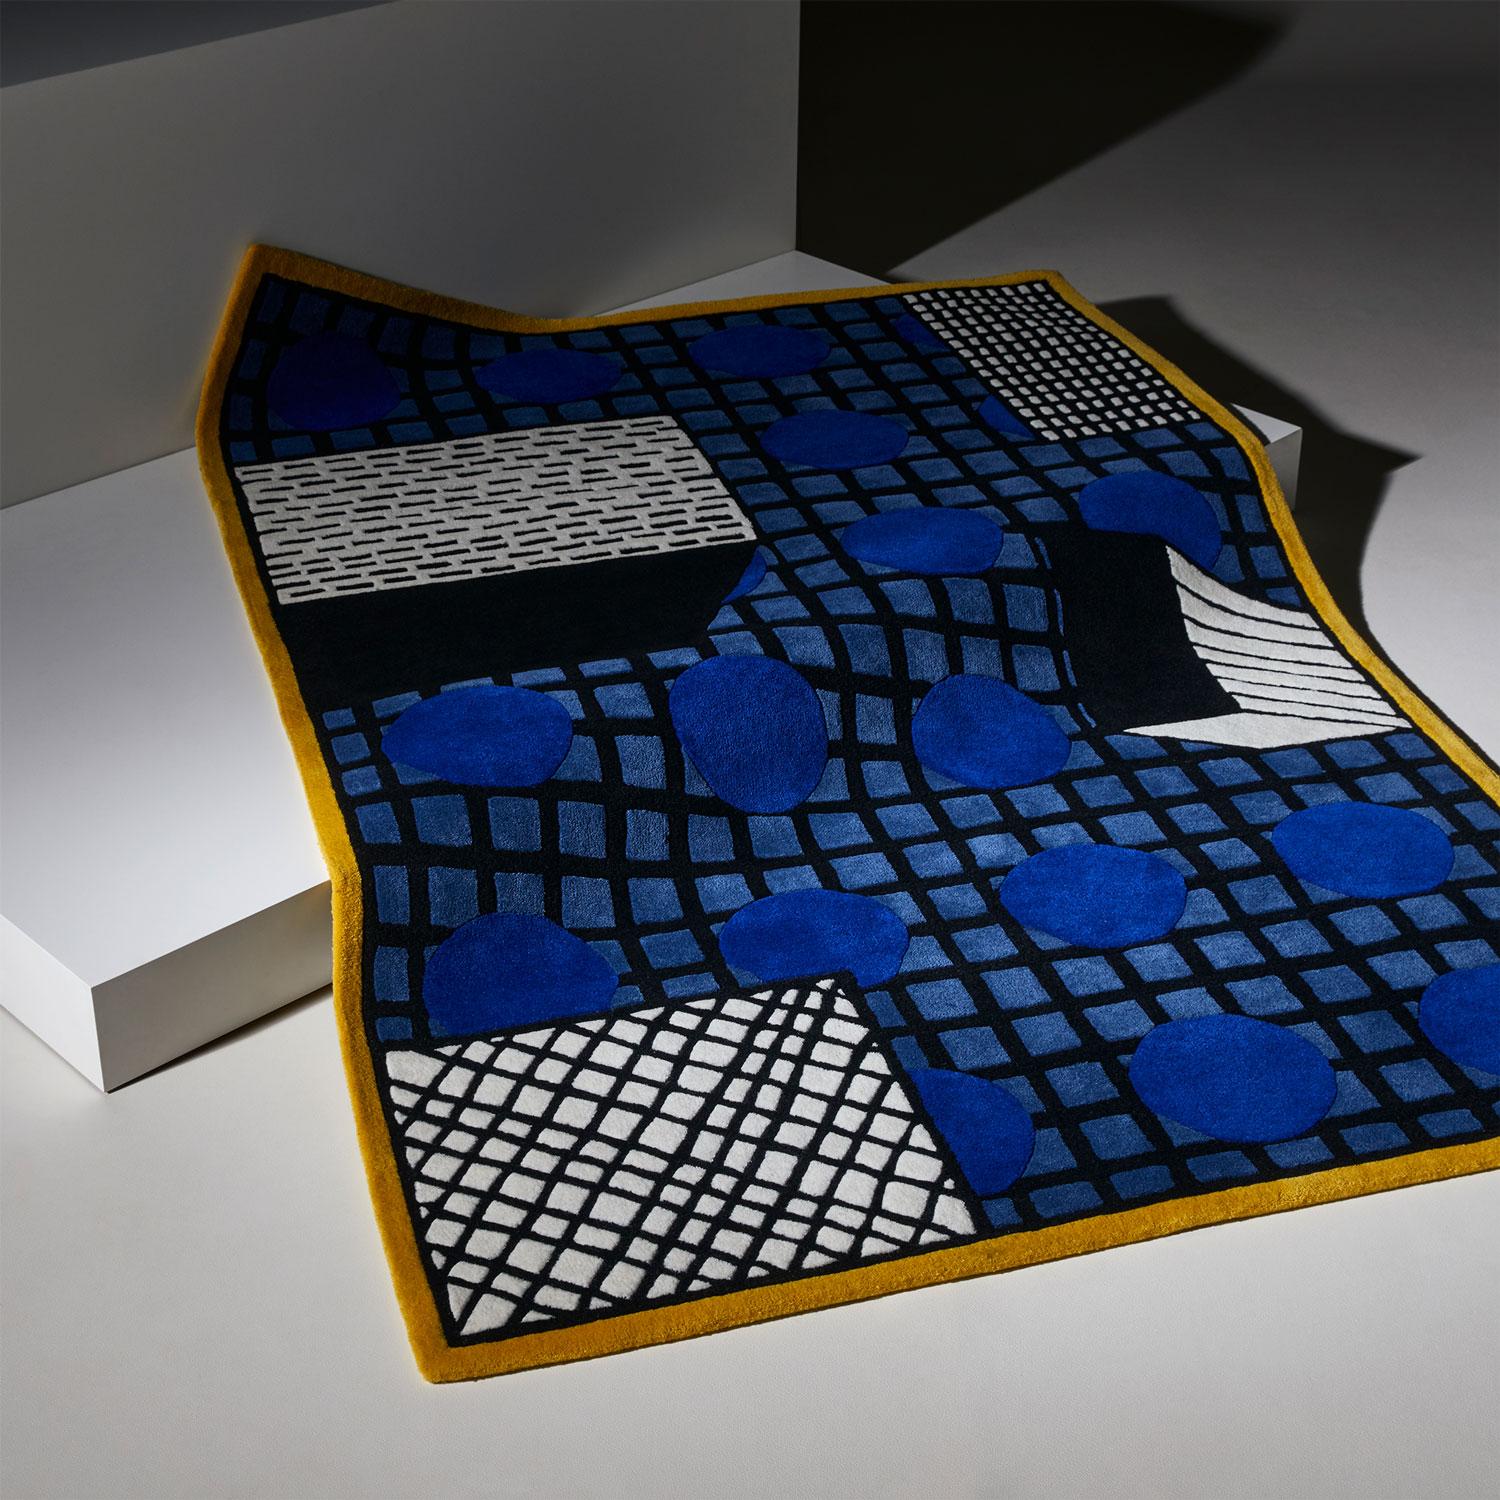 Tapigri-Teppich von Nathalie Du Pasquier
Abmessungen:200 x 290 cm
Kreationen auf Bestellung sind möglich

Tapigri ist eine Konstruktion aus geschichteten geometrischen Mustern, die von 3 Elementen gekrönt werden, die dem Teppich eine fast